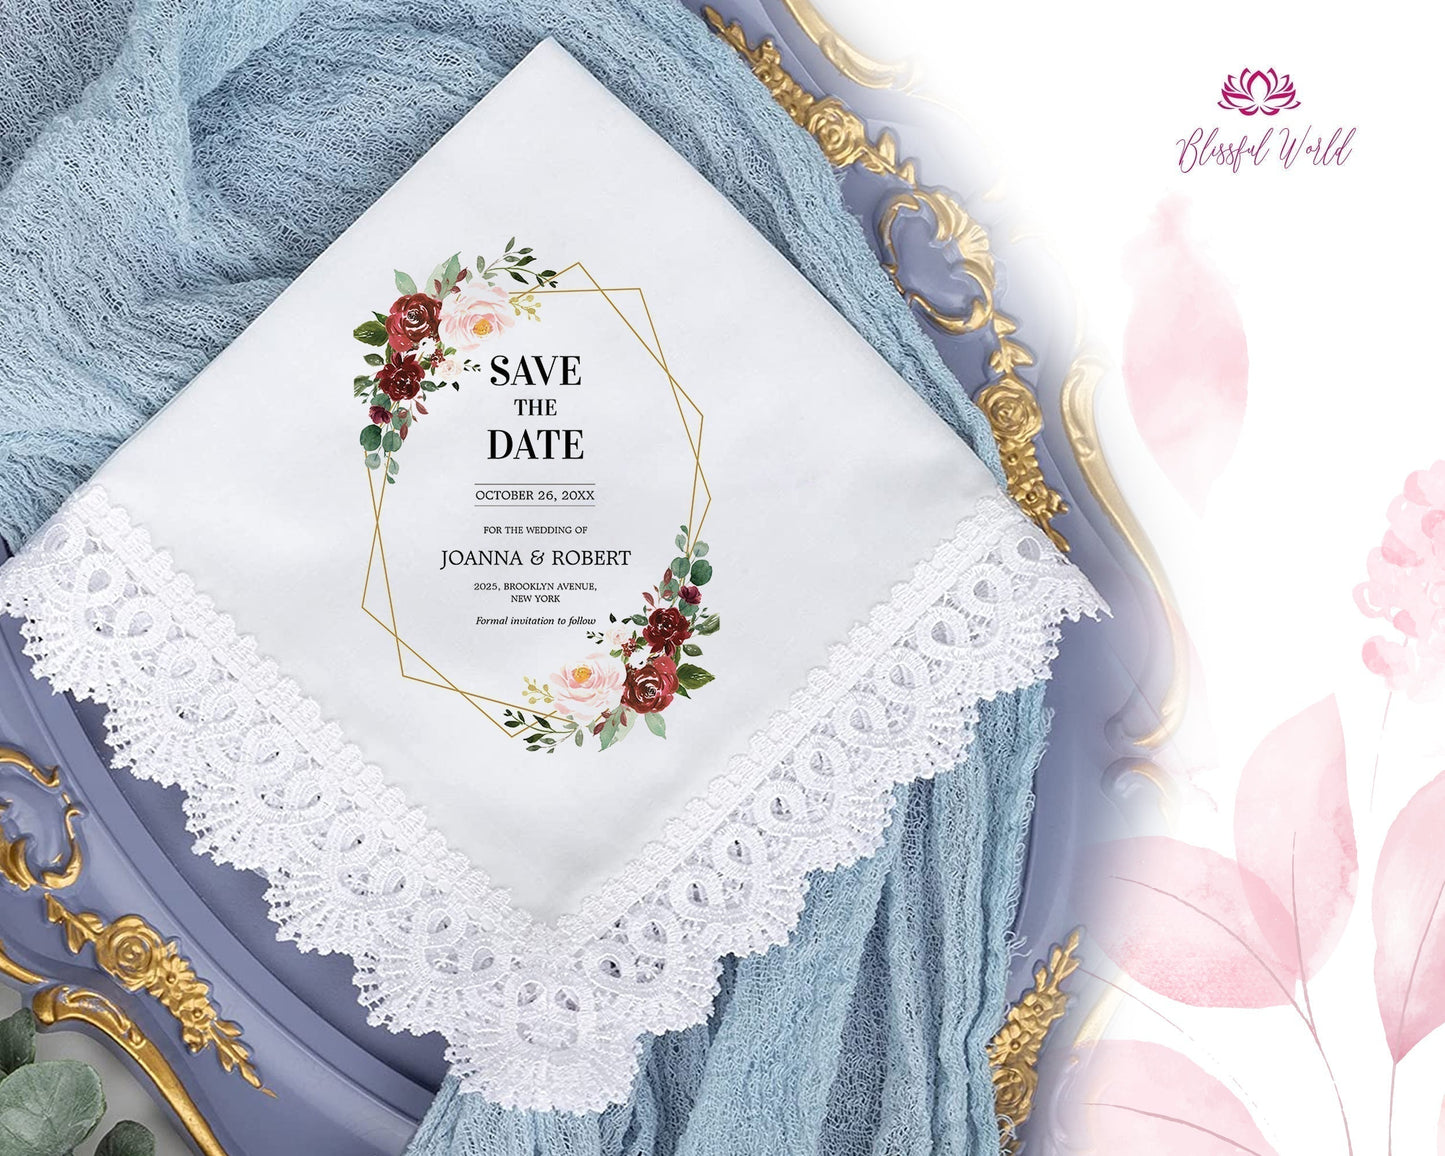 Wedding Handkerchief, Wedding hankerchief, wedding hanky, mother of the bride handkerchiefs, bride and groom names wedding hankie